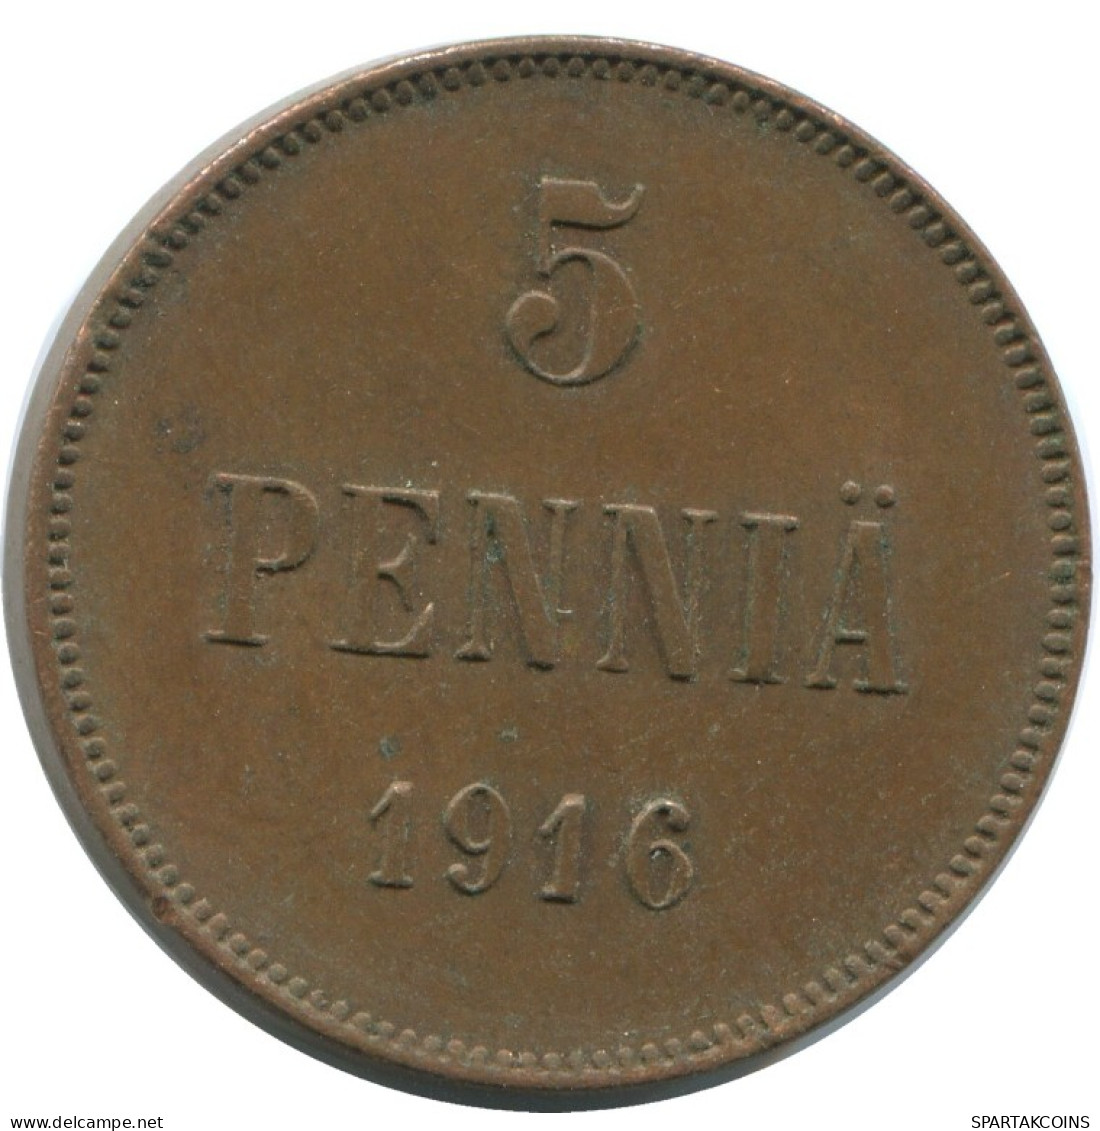 5 PENNIA 1916 FINLAND Coin RUSSIA EMPIRE #AB207.5.U.A - Finlande